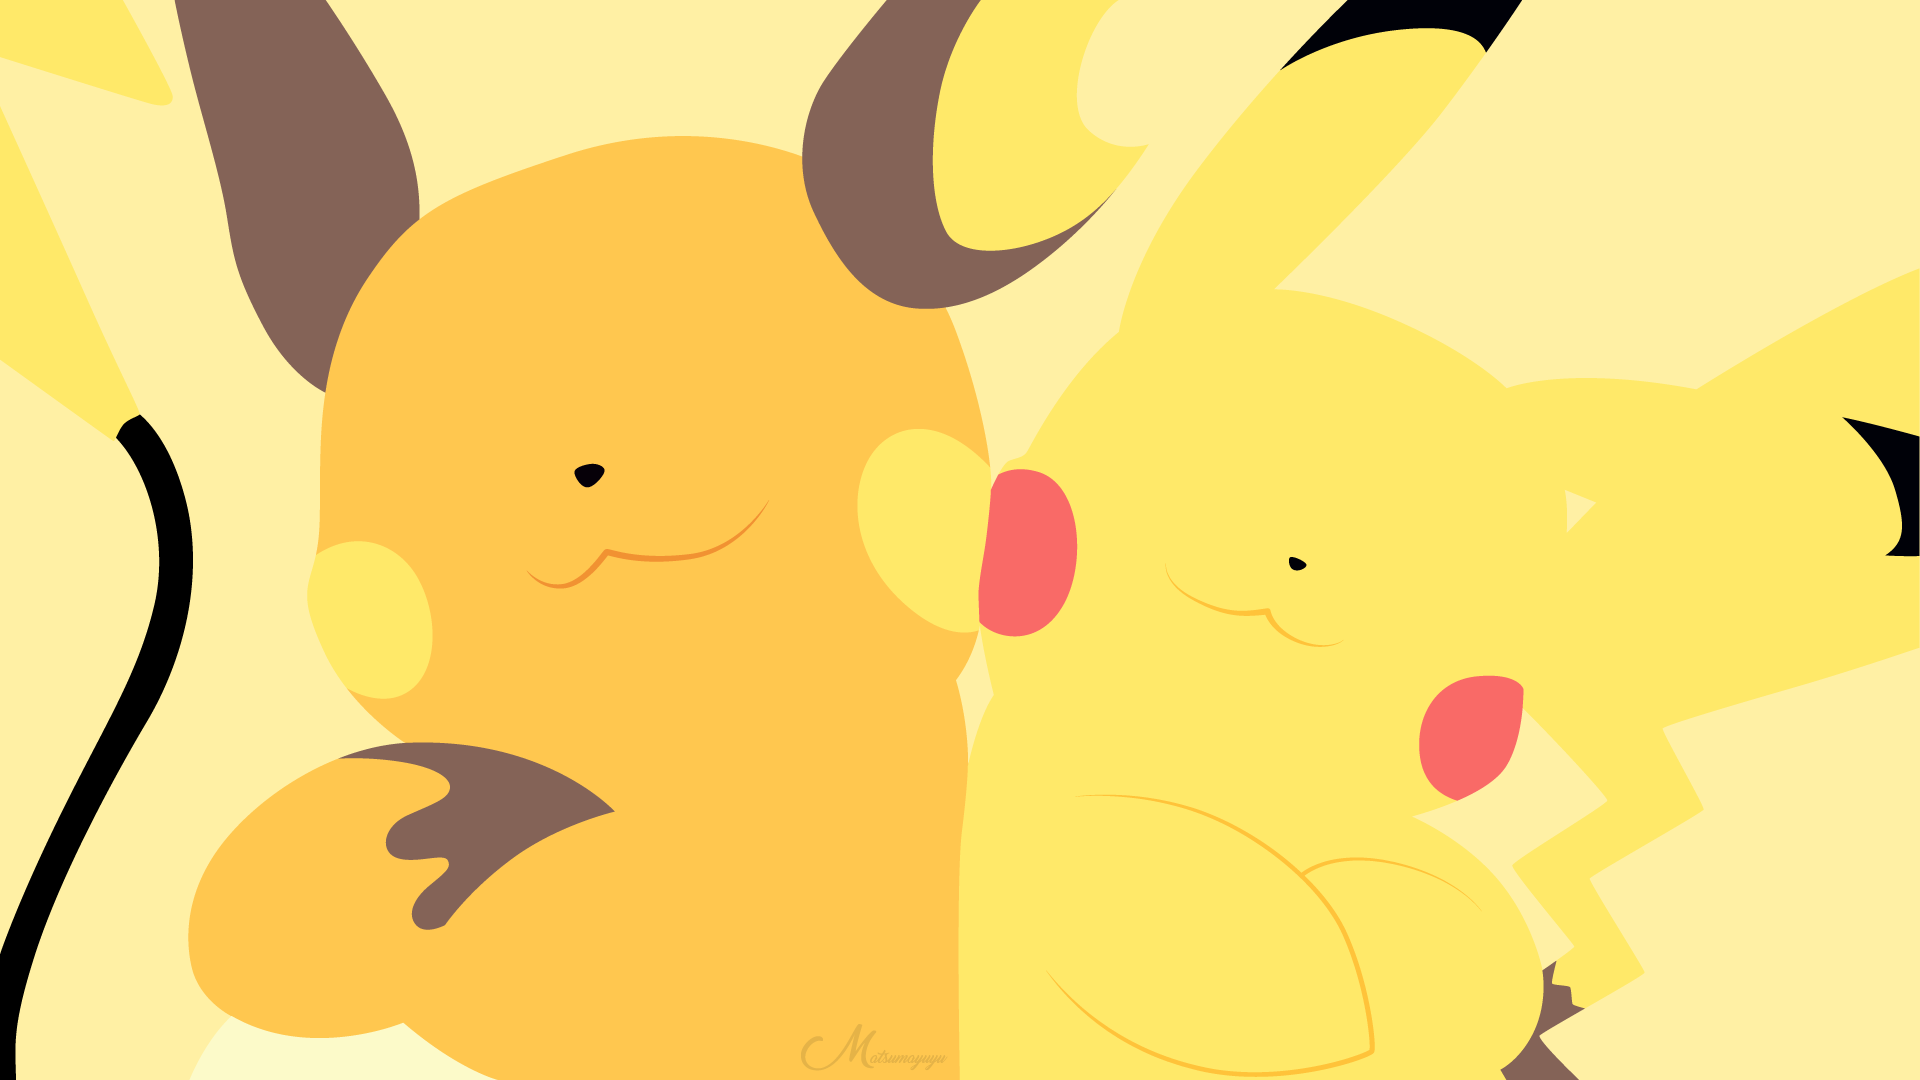 Pikachu and Raichu by matsumayu HD Wallpaper